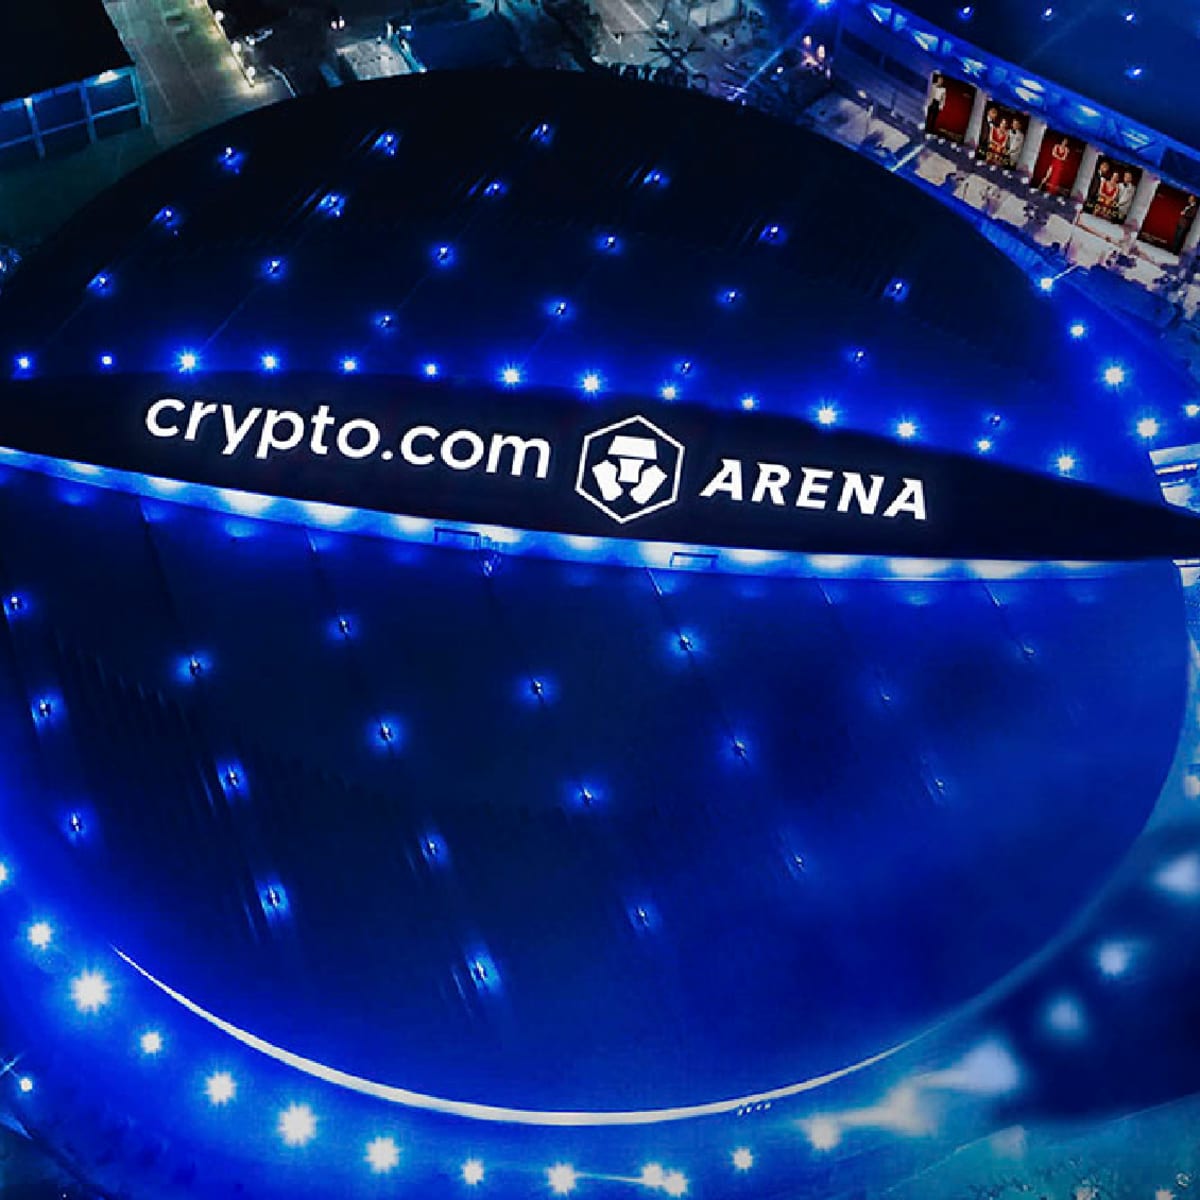 L.A.'s Staples Center Becomes Crypto.com Arena - TheStreet